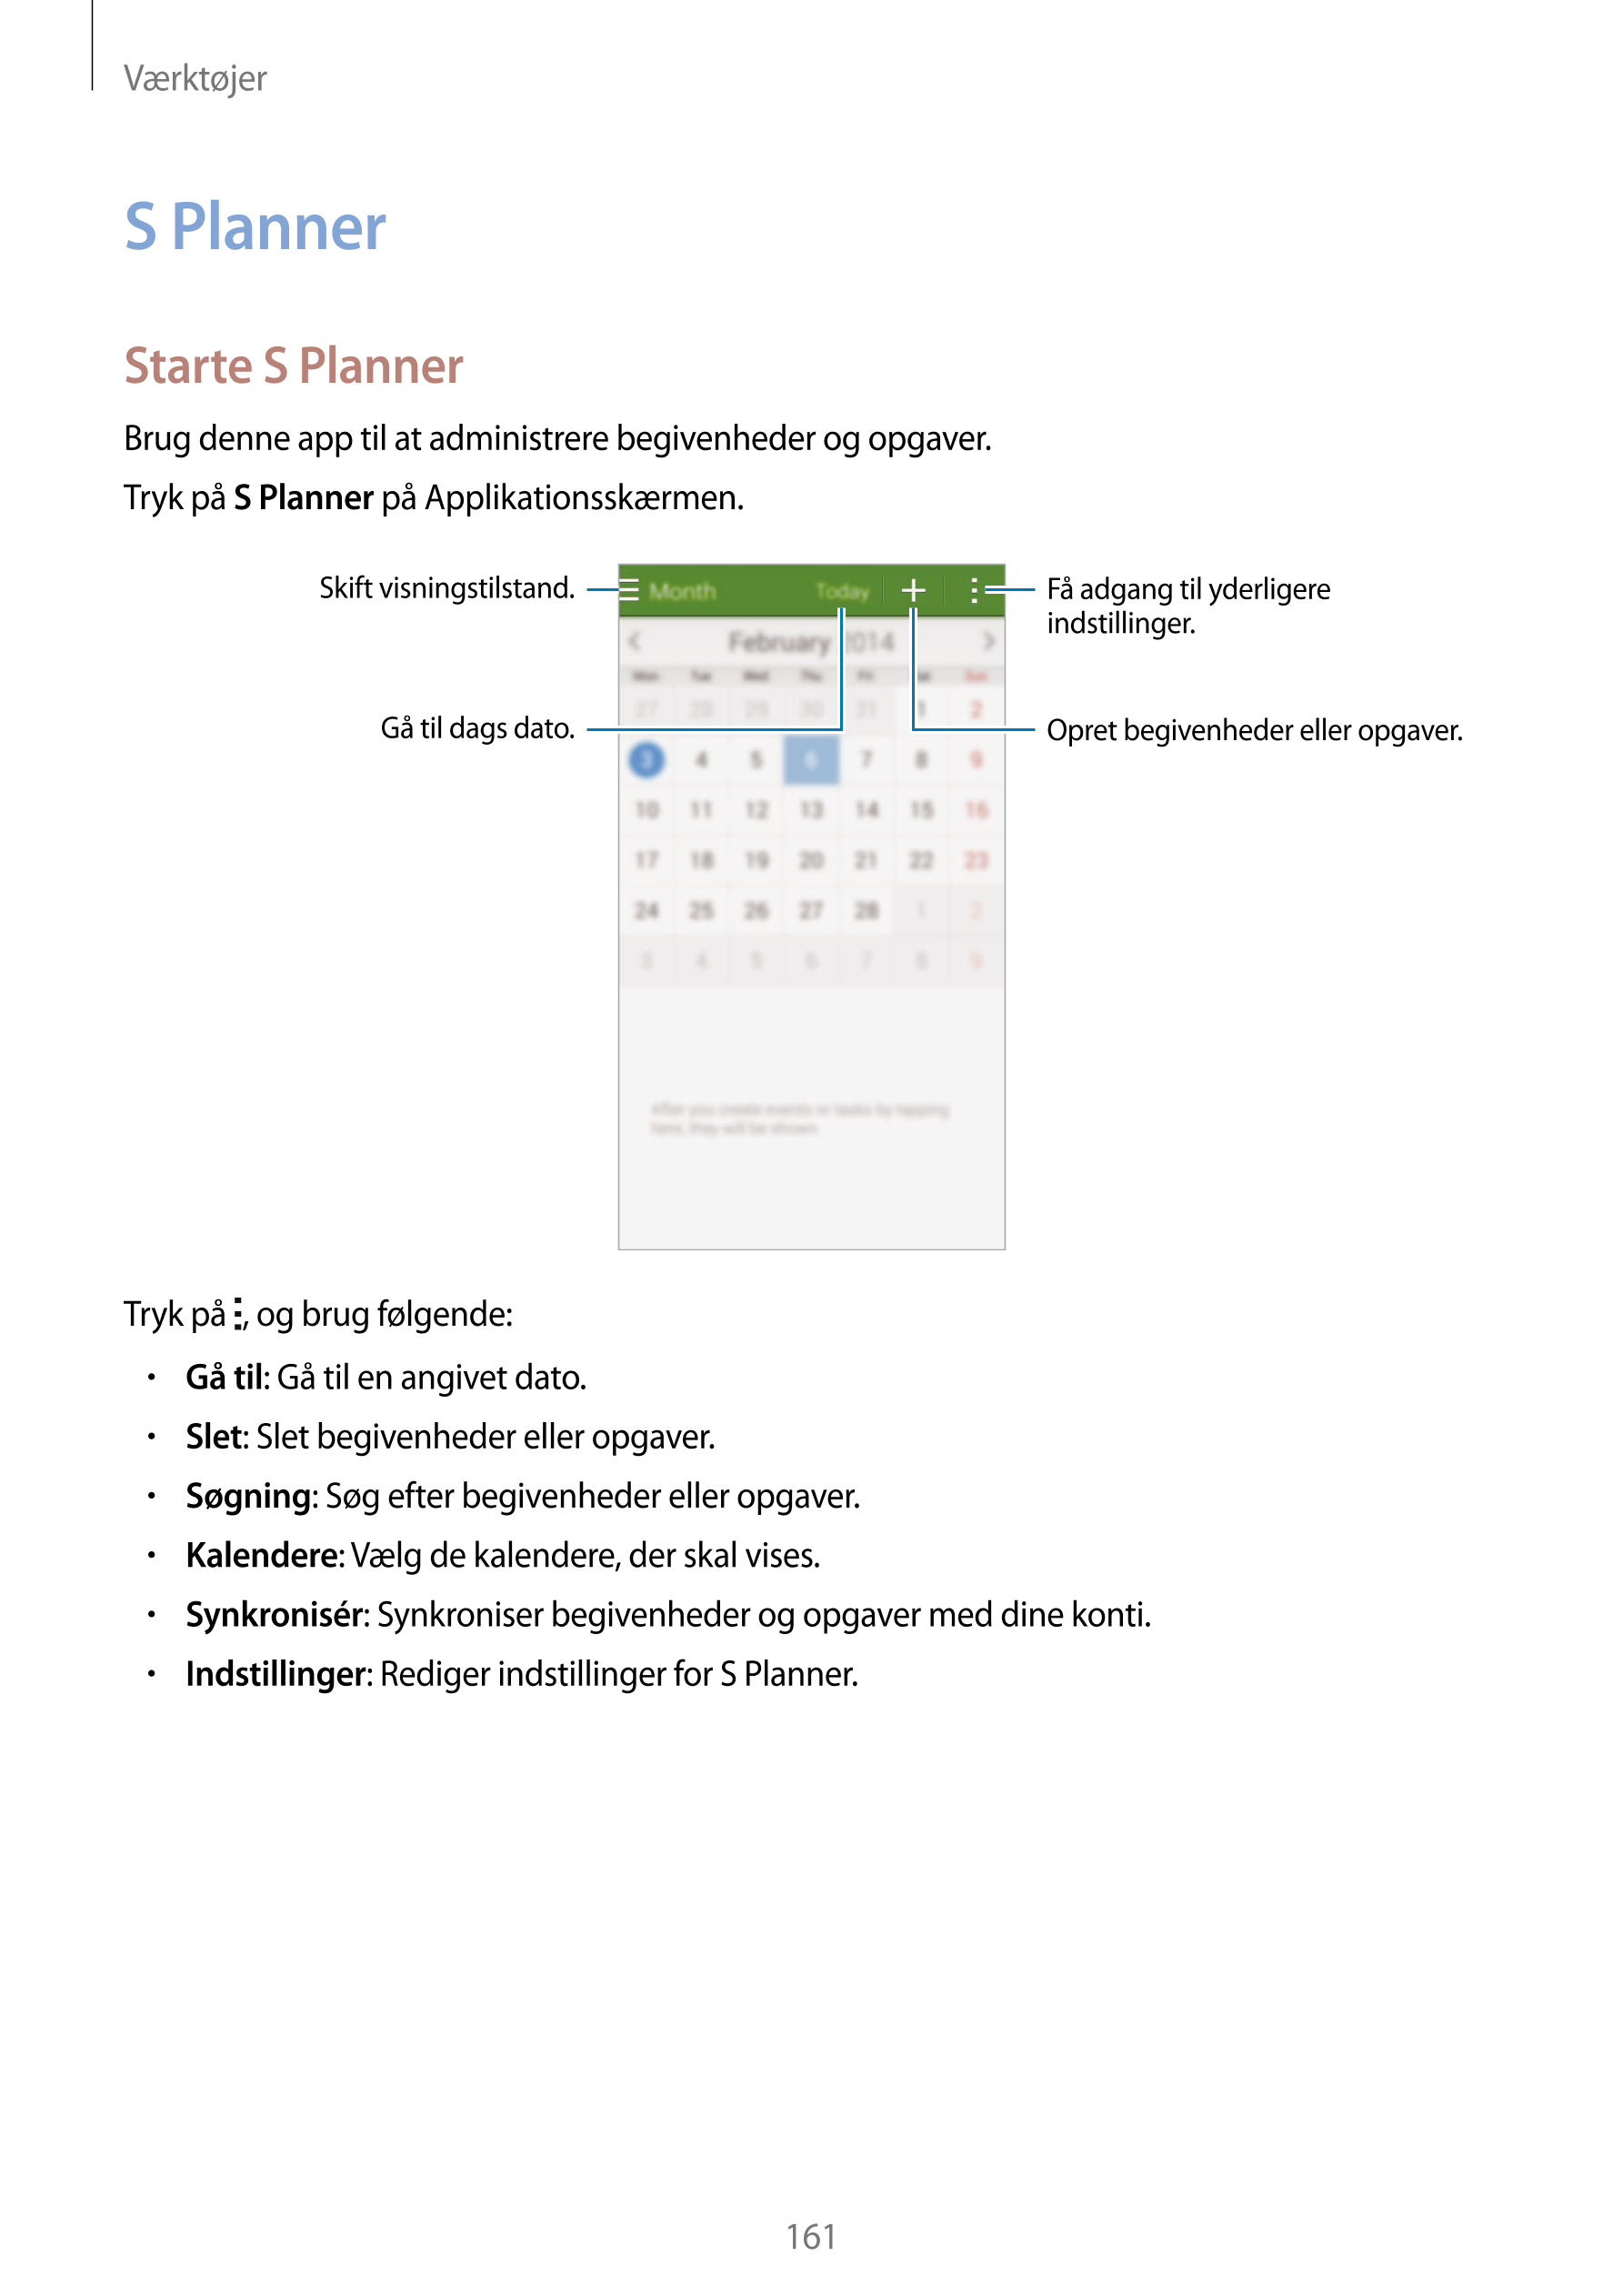 Værktøjer
S Planner
Starte S Planner
Brug denne app til at administrere begivenheder og opgaver.
Tryk på  S Planner på Applikati